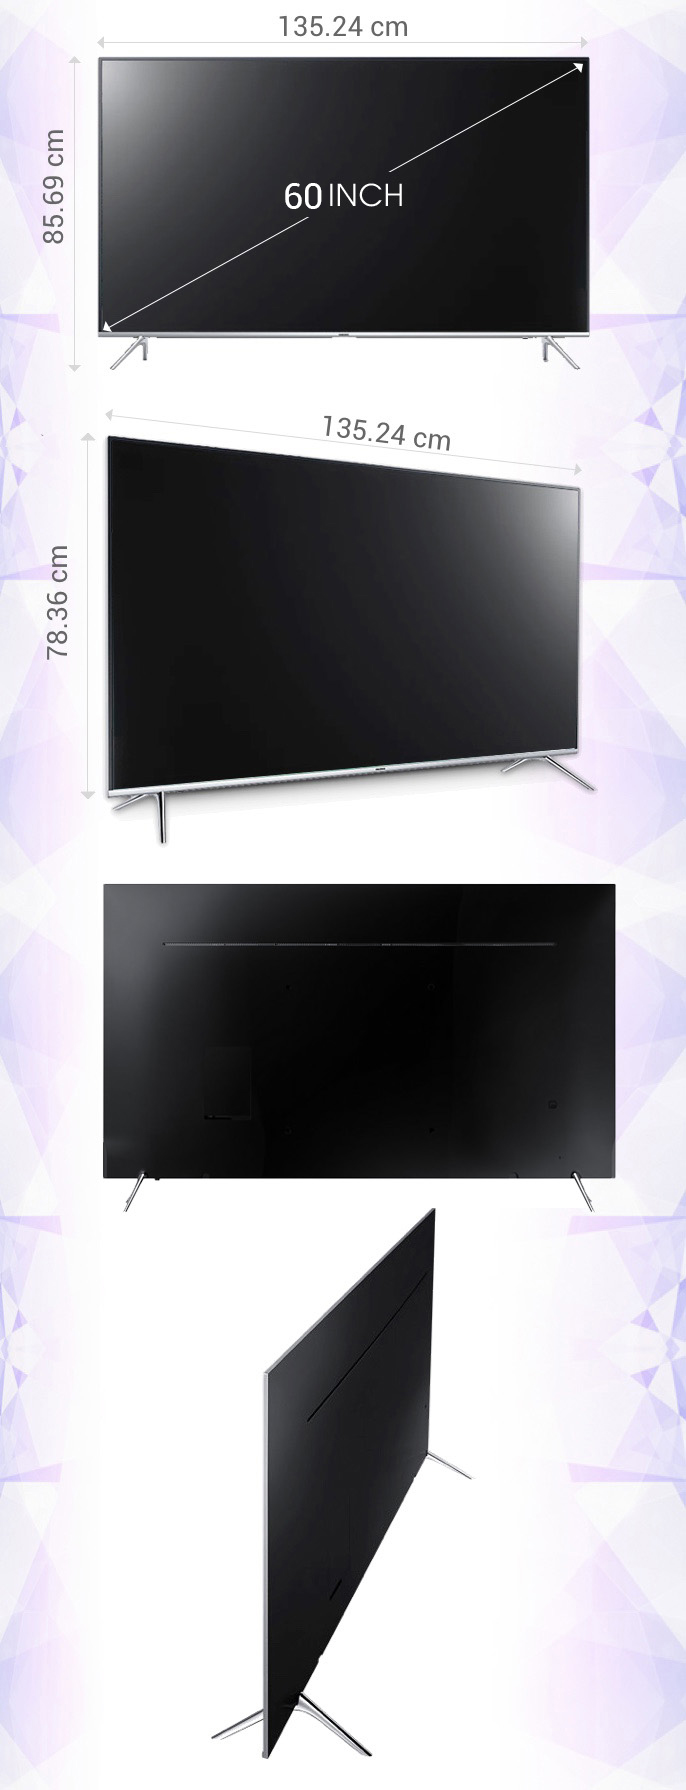 Smart tivi Samsung 60 inch UA60KS7000 - Kích thước tivi